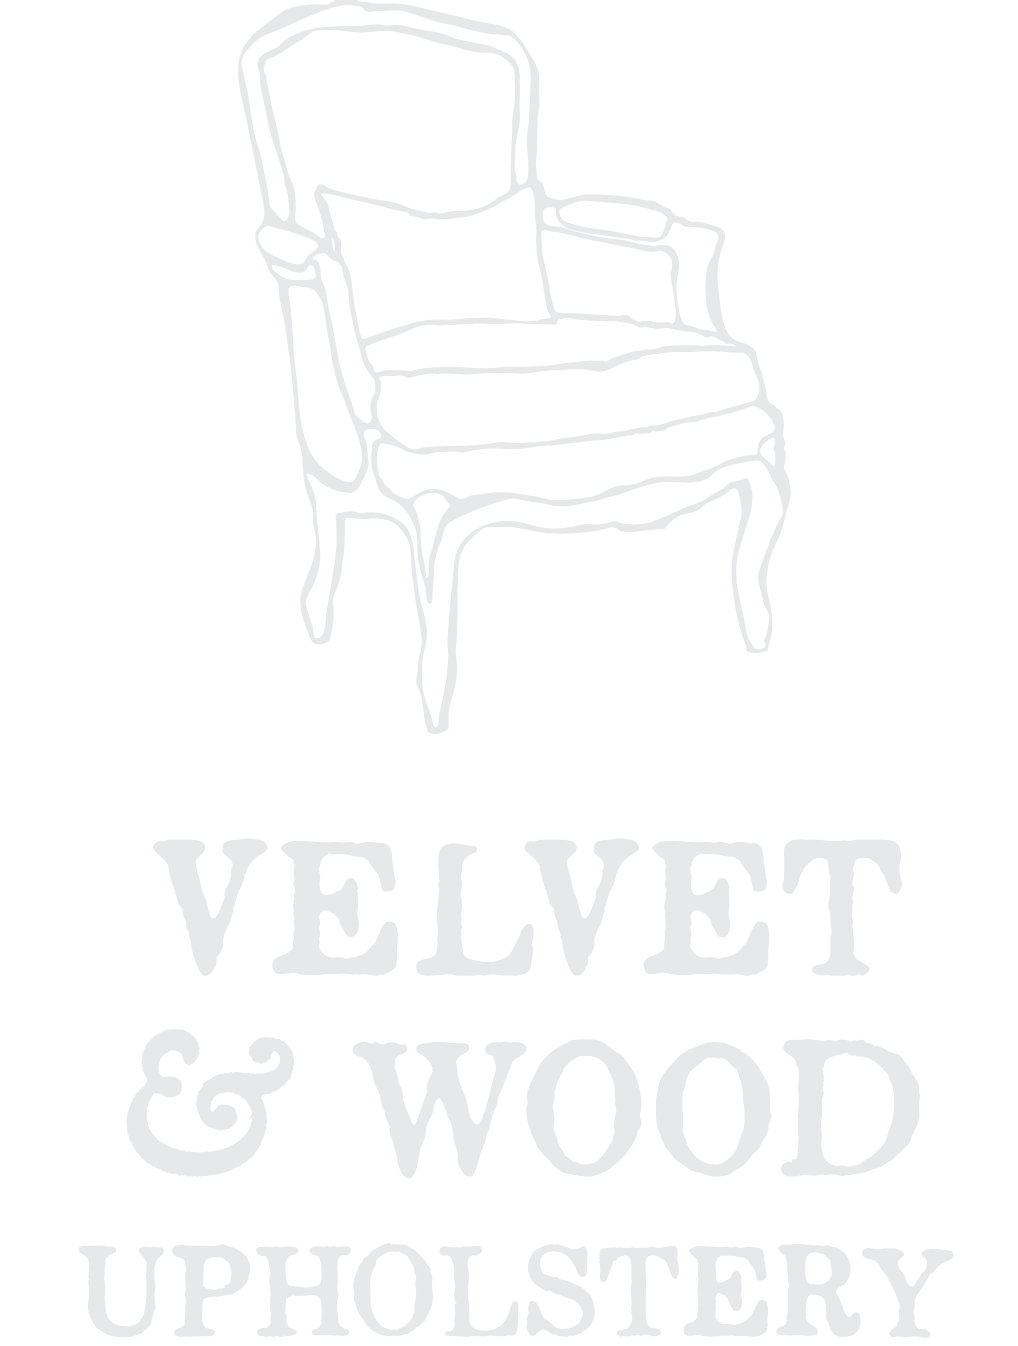 Velvet & Wood